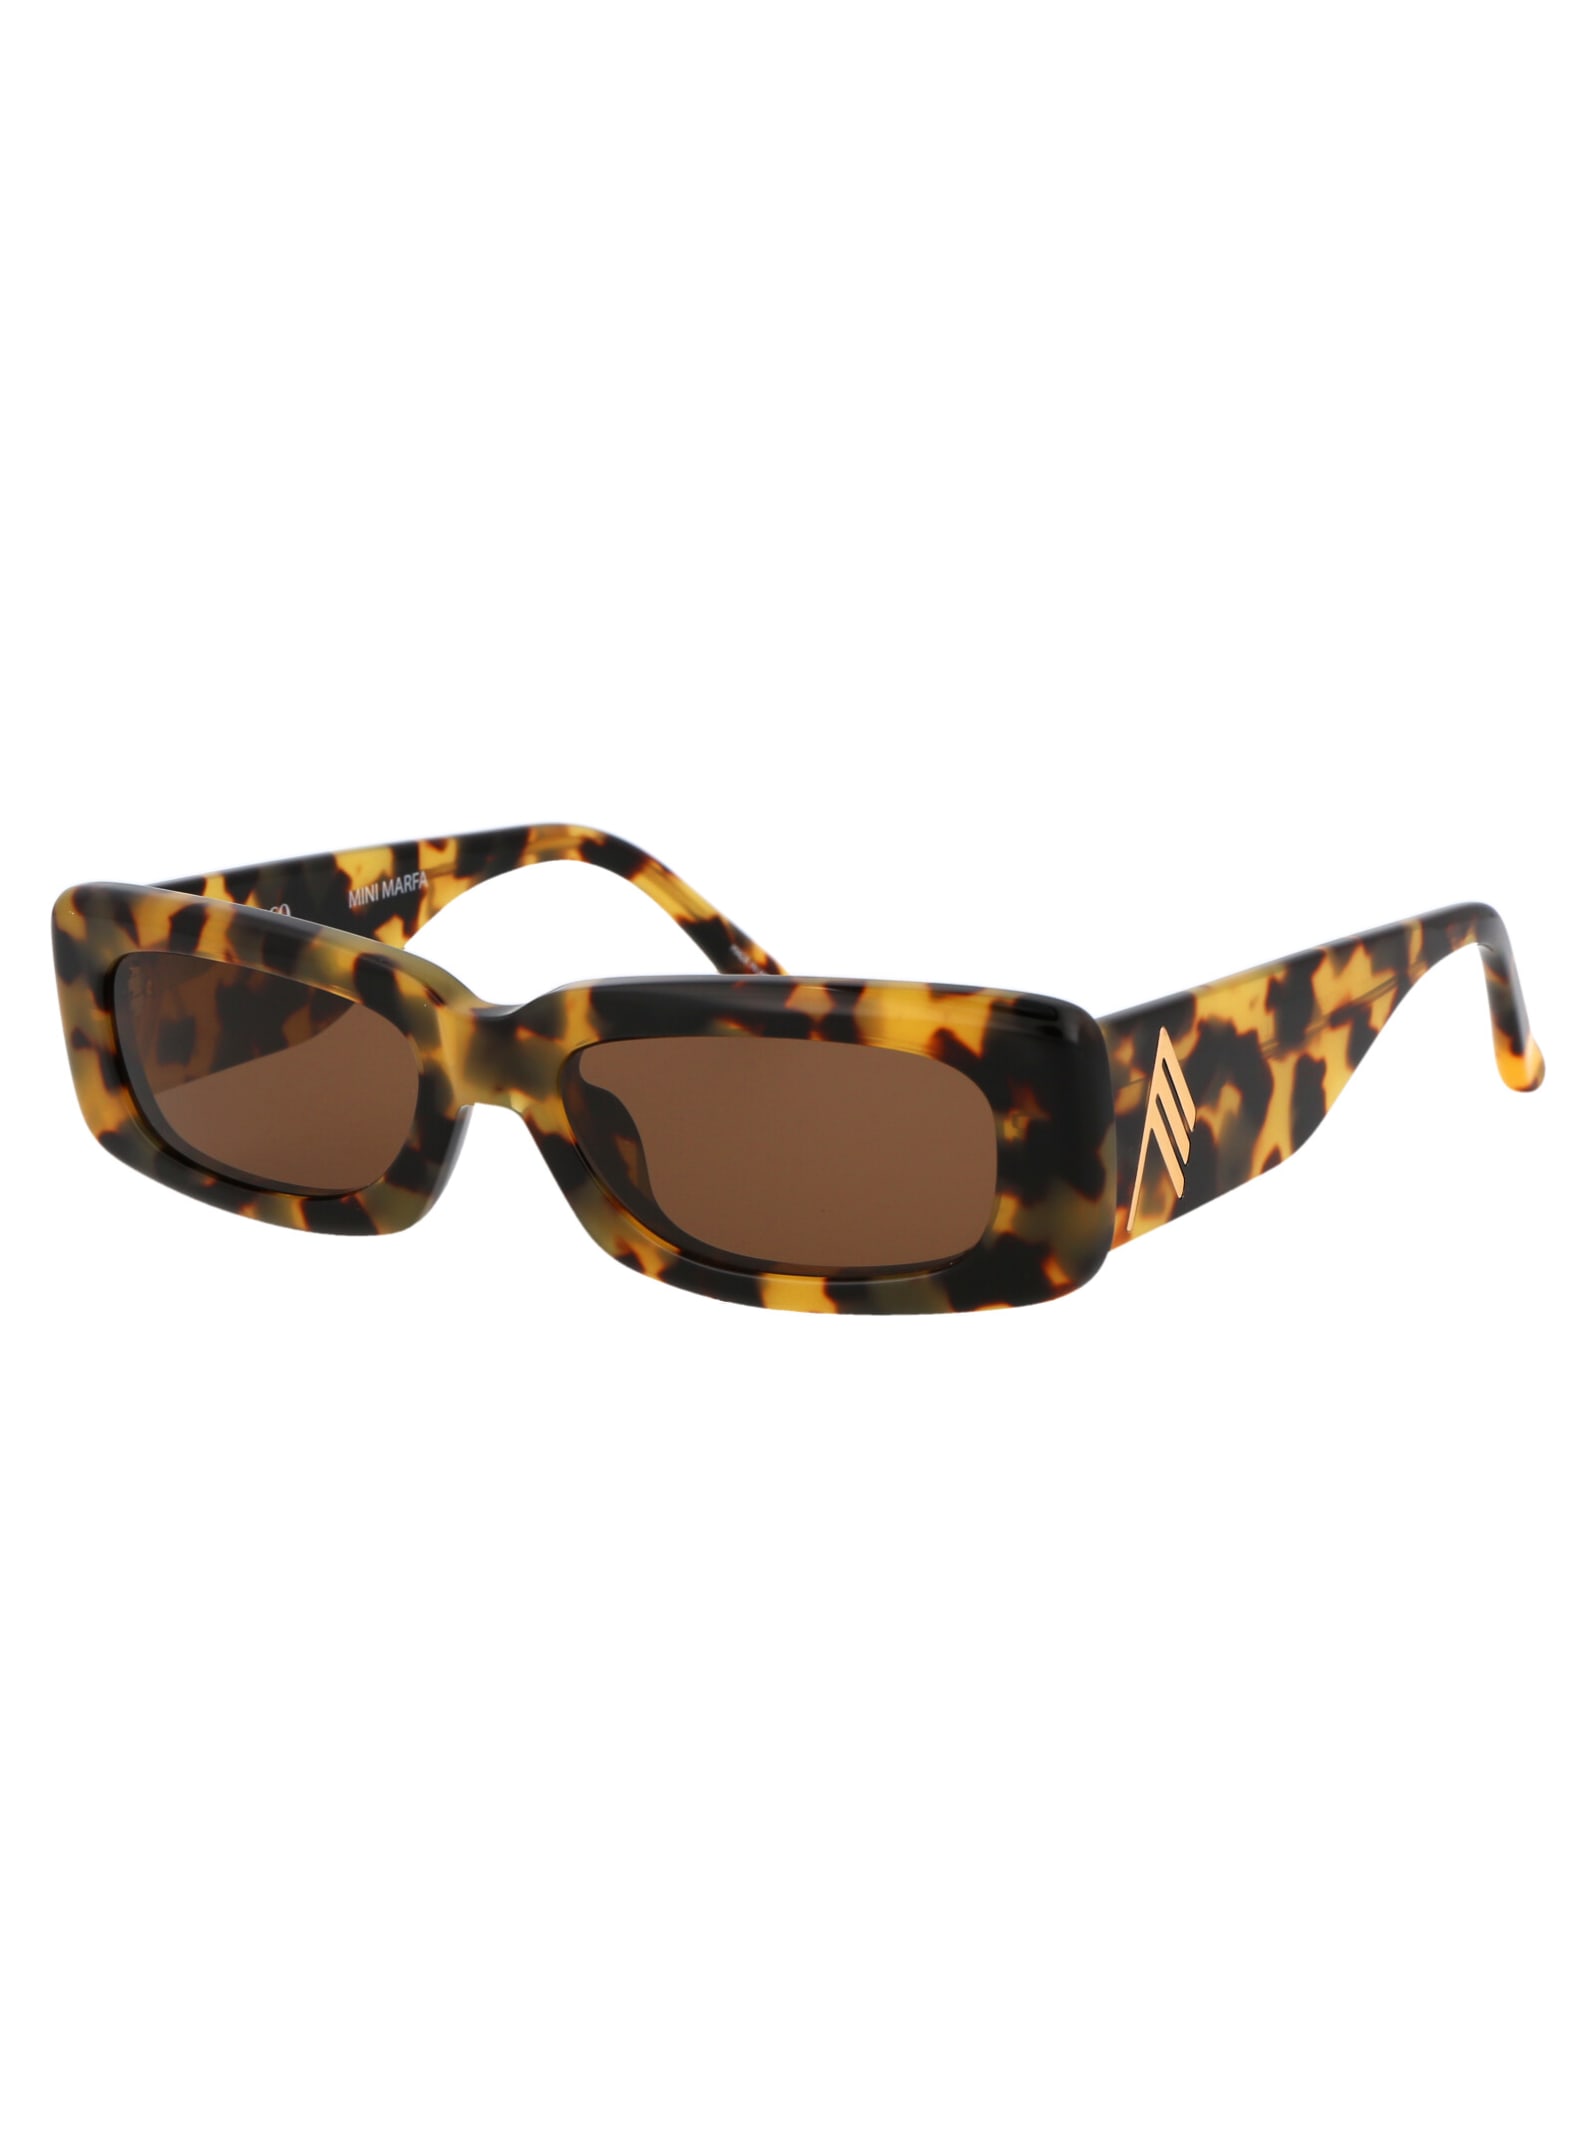 Shop Attico Mini Marfa Sunglasses In T-shell/yellowgold/brown